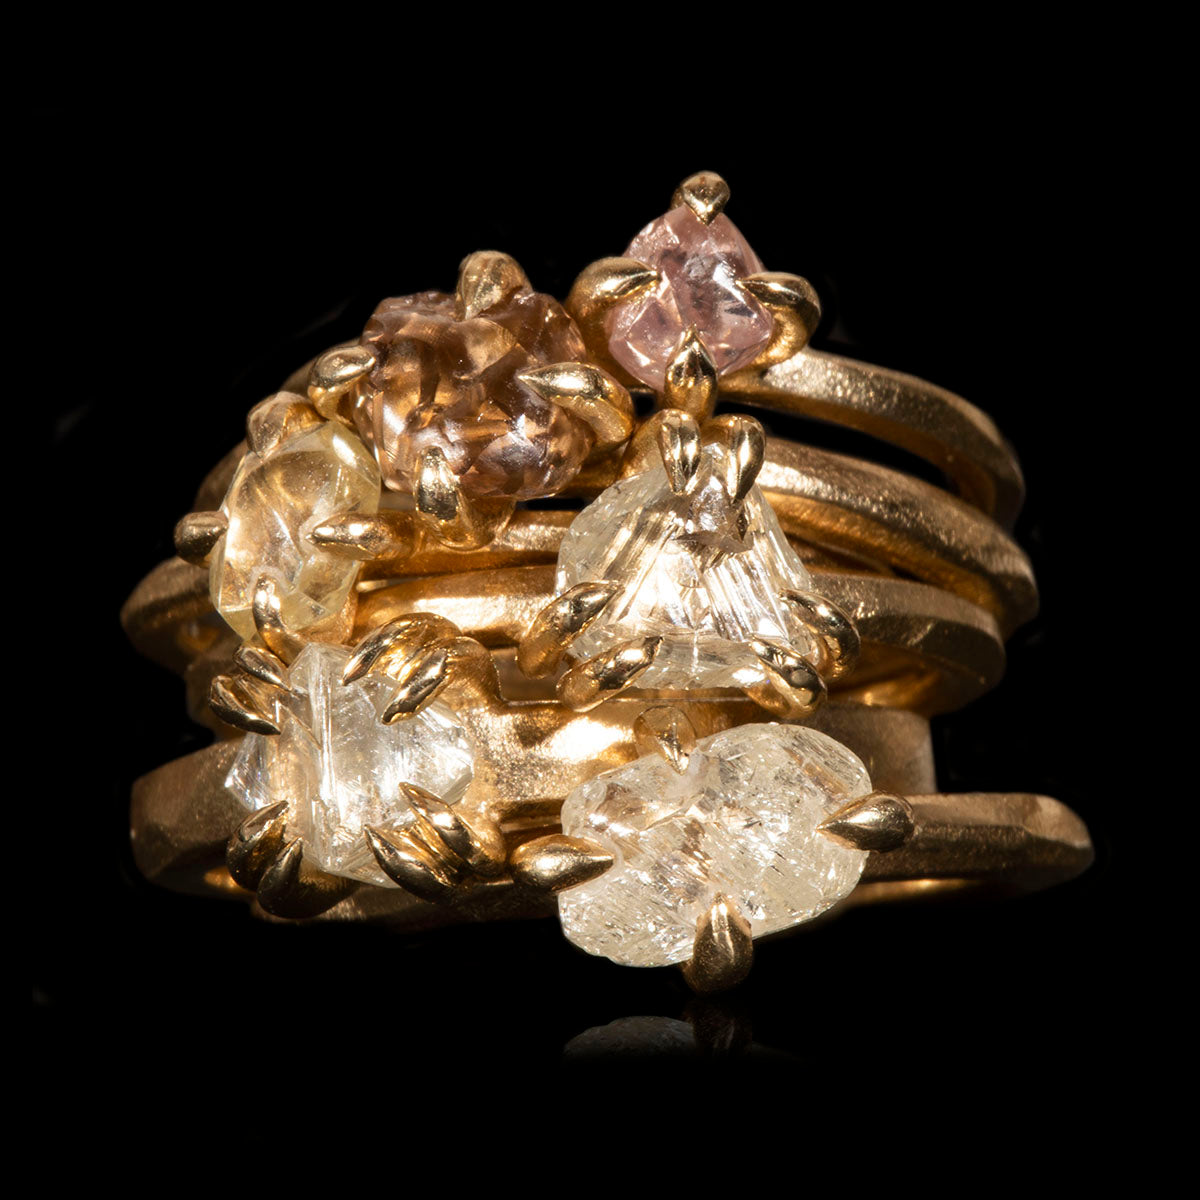 Black uncut raw diamond solitaire rustic ring, 1.14ct. – Cumbrian Designs